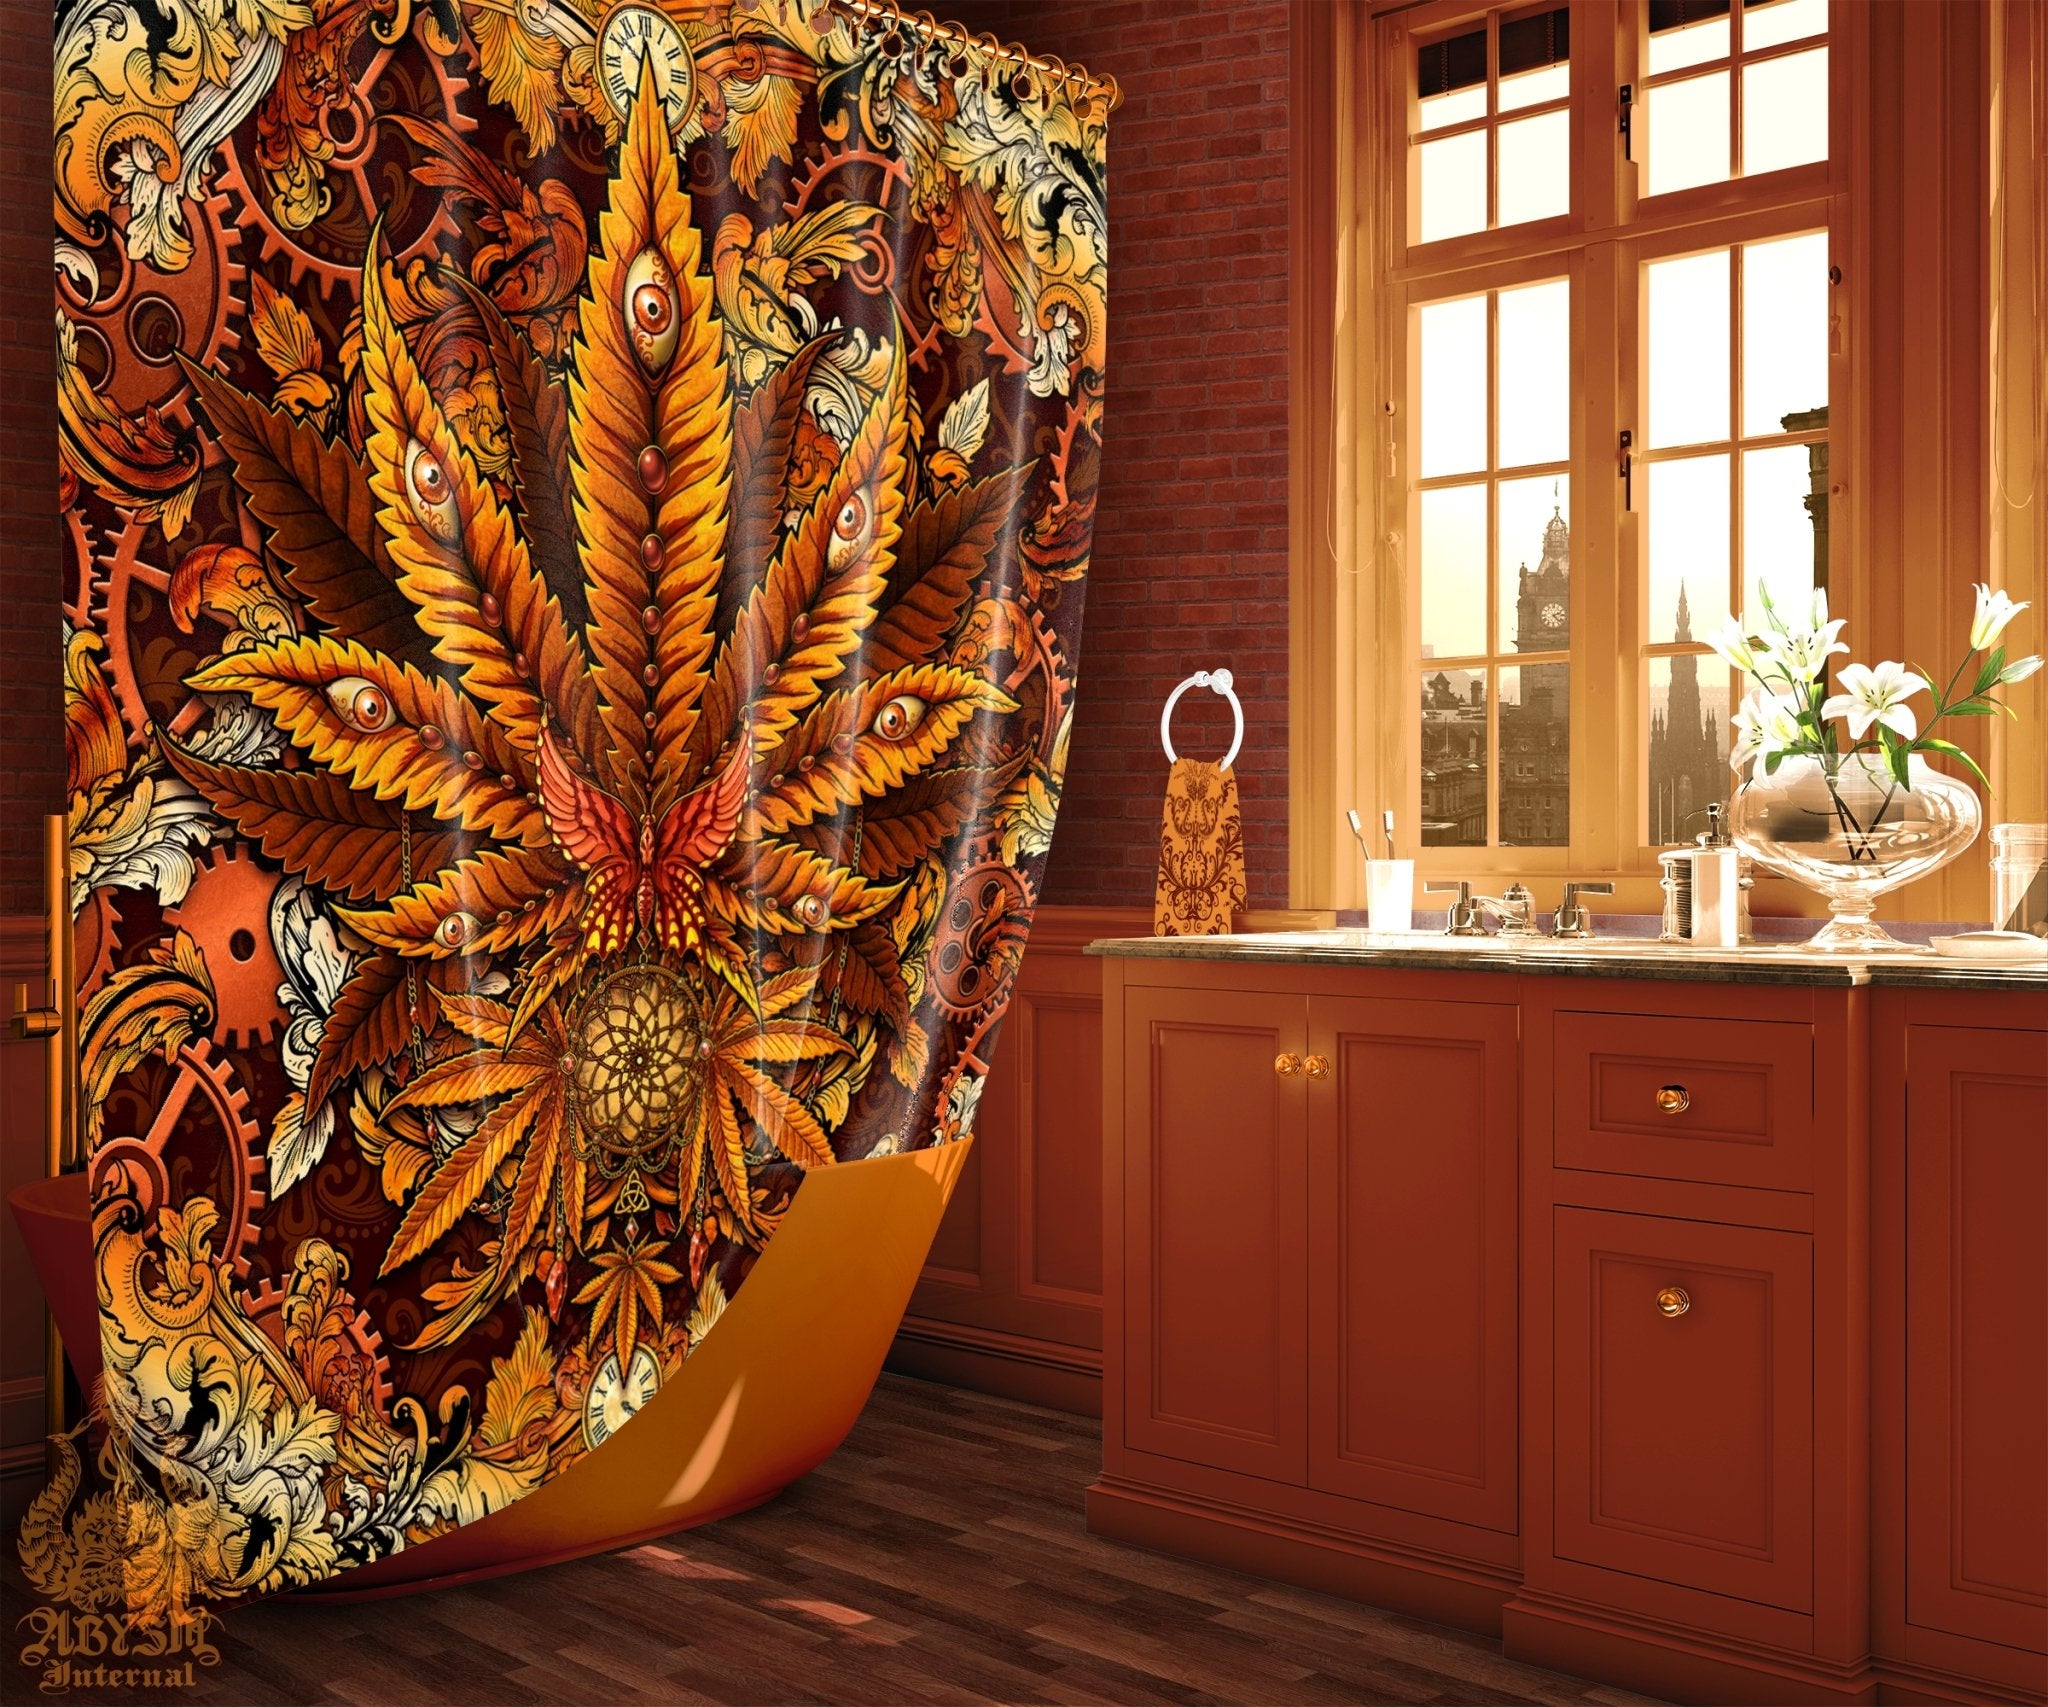 Weed Shower Curtain, Hippie Bathroom Decor, Indie Cannabis Print, 420 Home Art - Marijuana, Steampunk - Abysm Internal